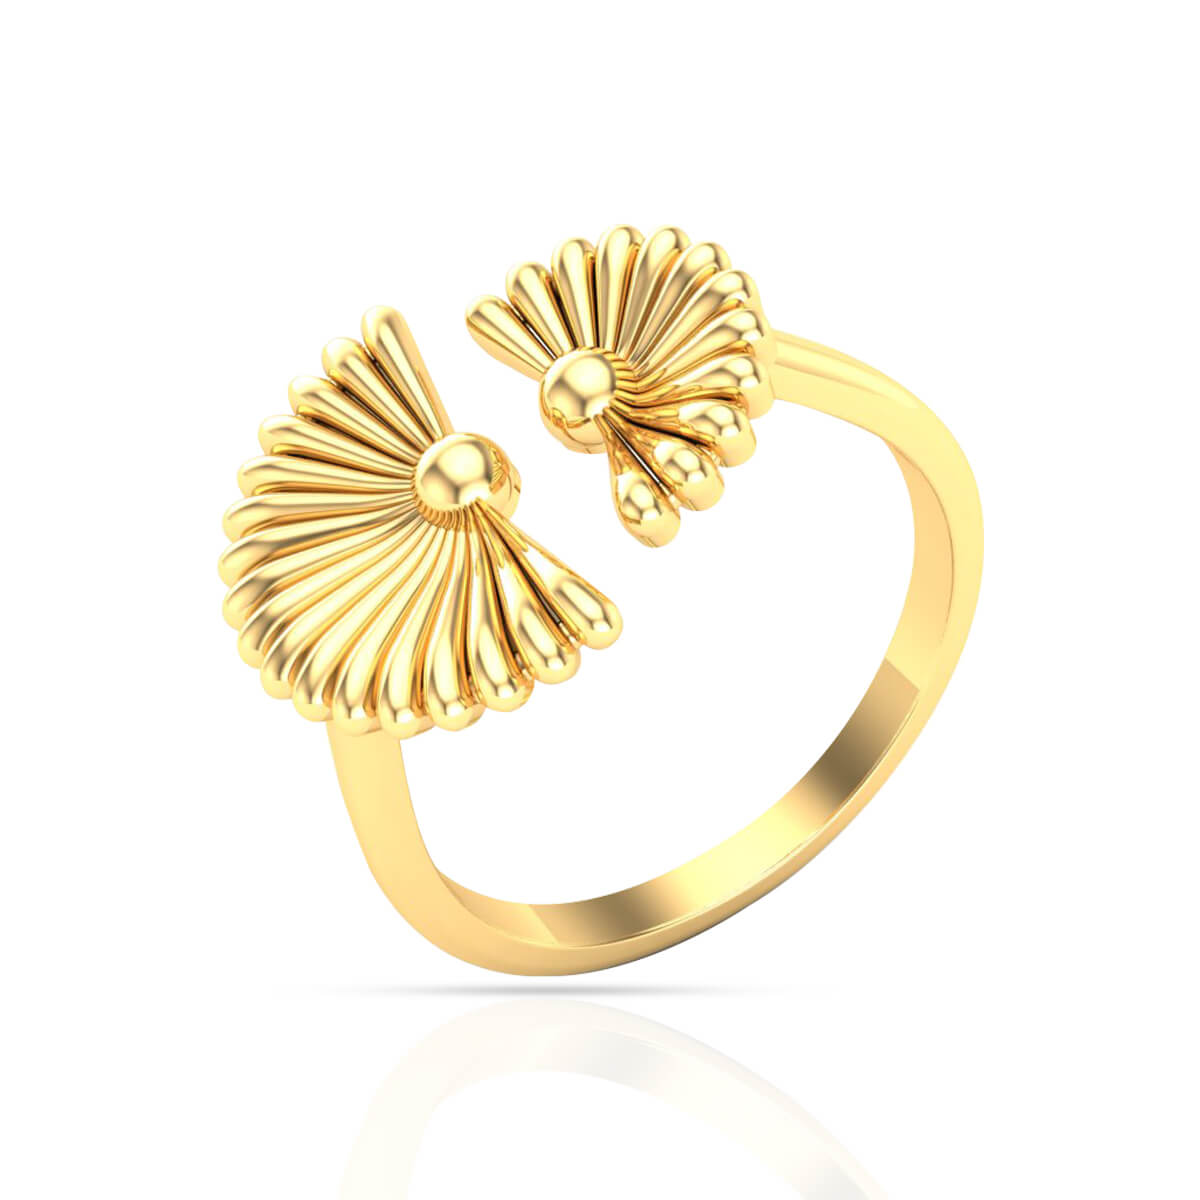 RS name gold ring for men | Rings for men, Mens gold rings, Gold rings-saigonsouth.com.vn